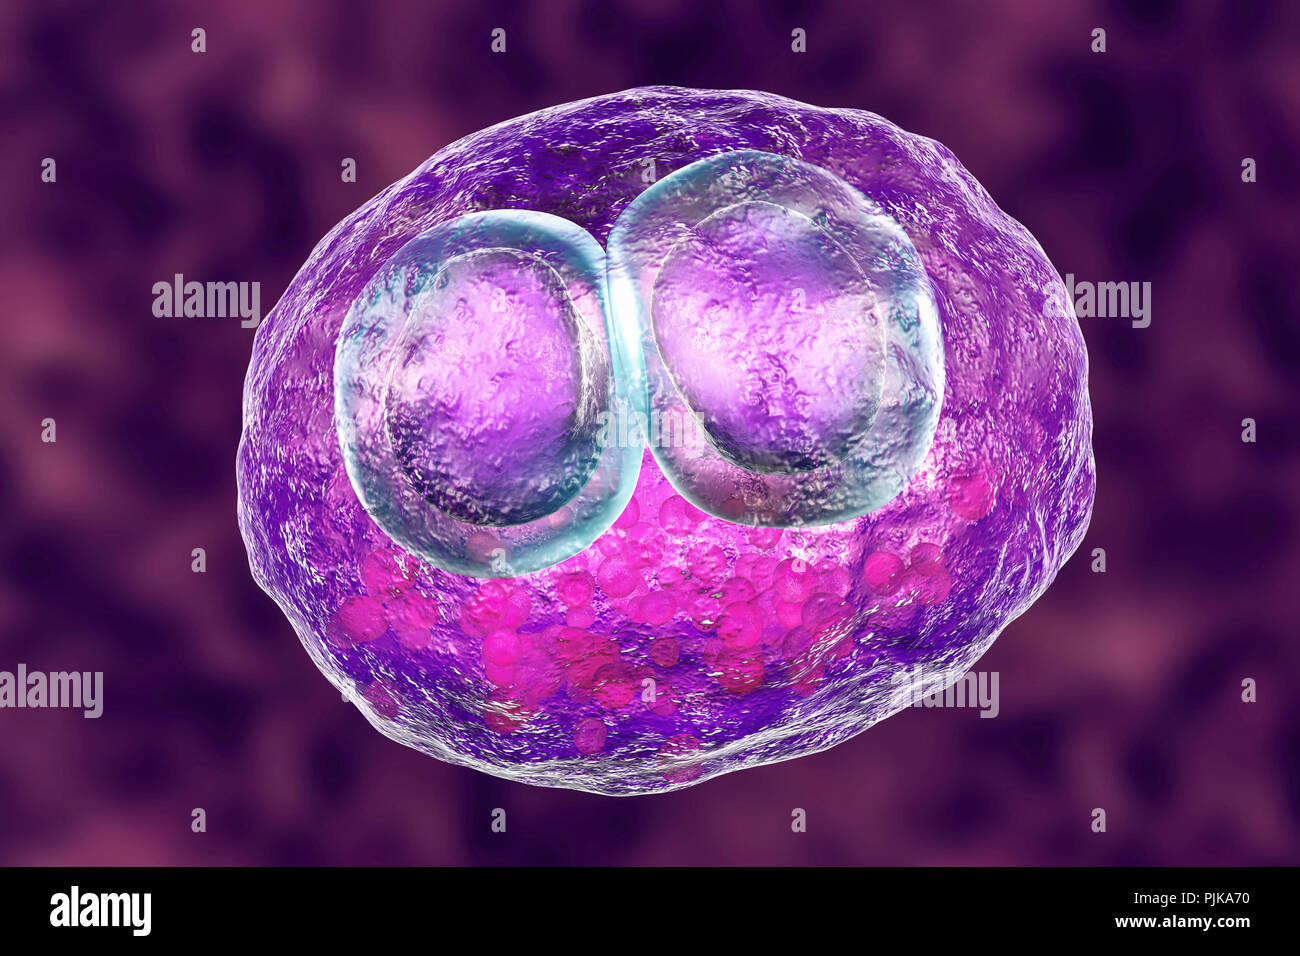 Infection à cytomégalovirus. Illustration d'ordinateur des cellules montrant l'inclusion inclusions cytomégaliques maladie, un symptôme d'infection à cytomégalovirus. Cytomeg Banque D'Images